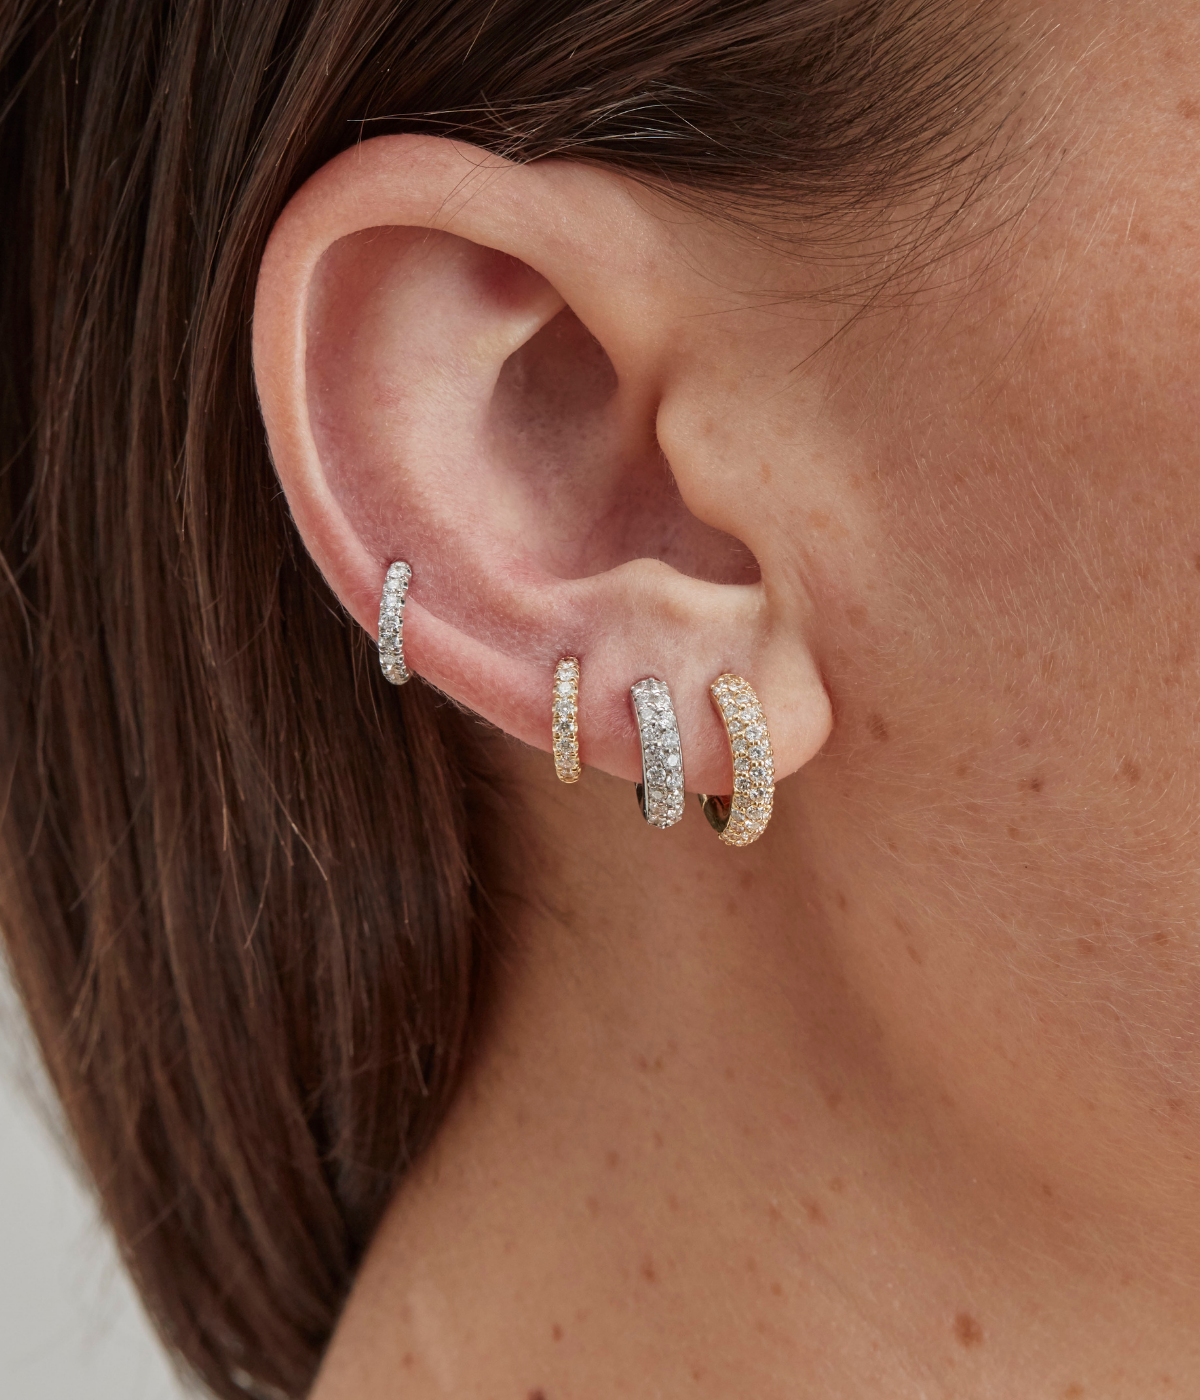 Mini Microhoop 18k white gold white diamonds earrings